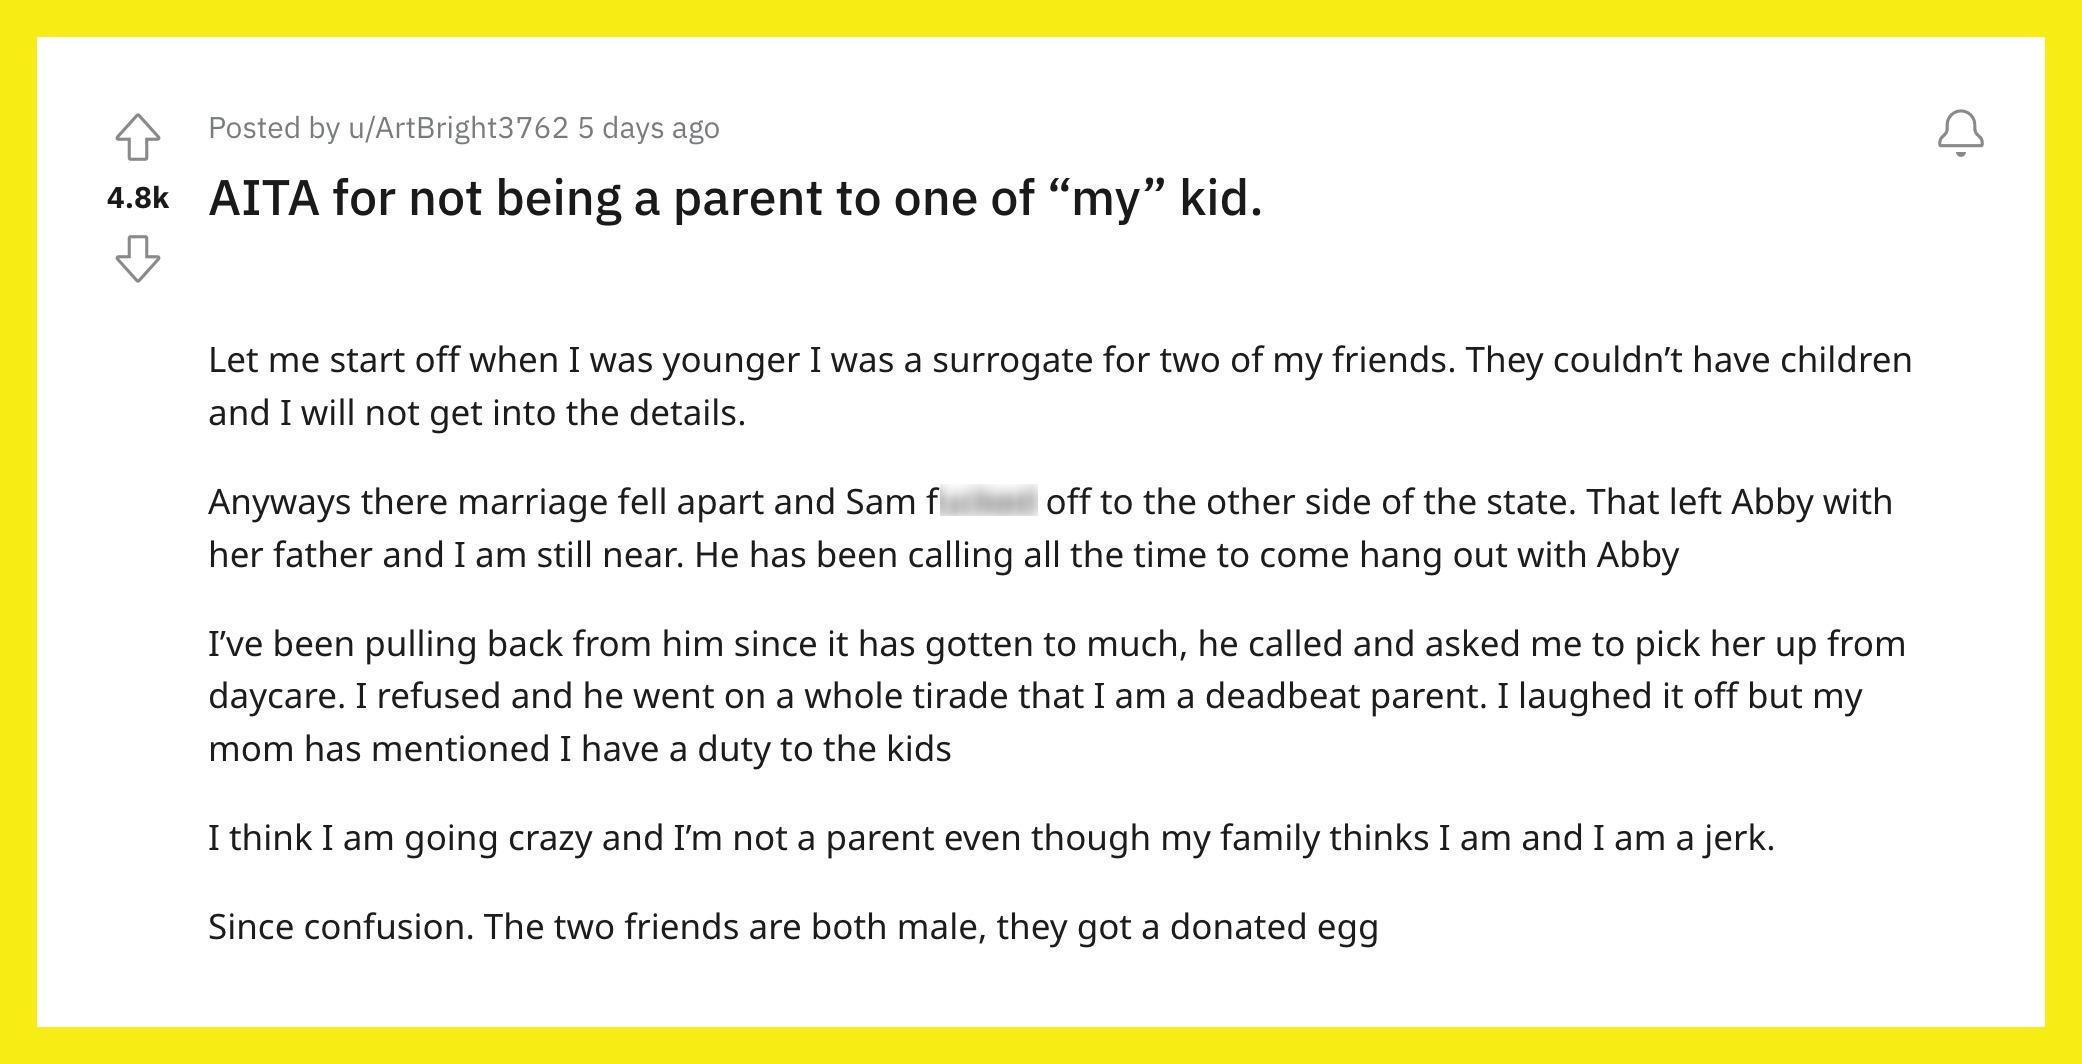 L'utente di Reddit u/ArtBright3762 era un surrogato dei suoi amici, che ora affermano di essere un genitore fannullone.